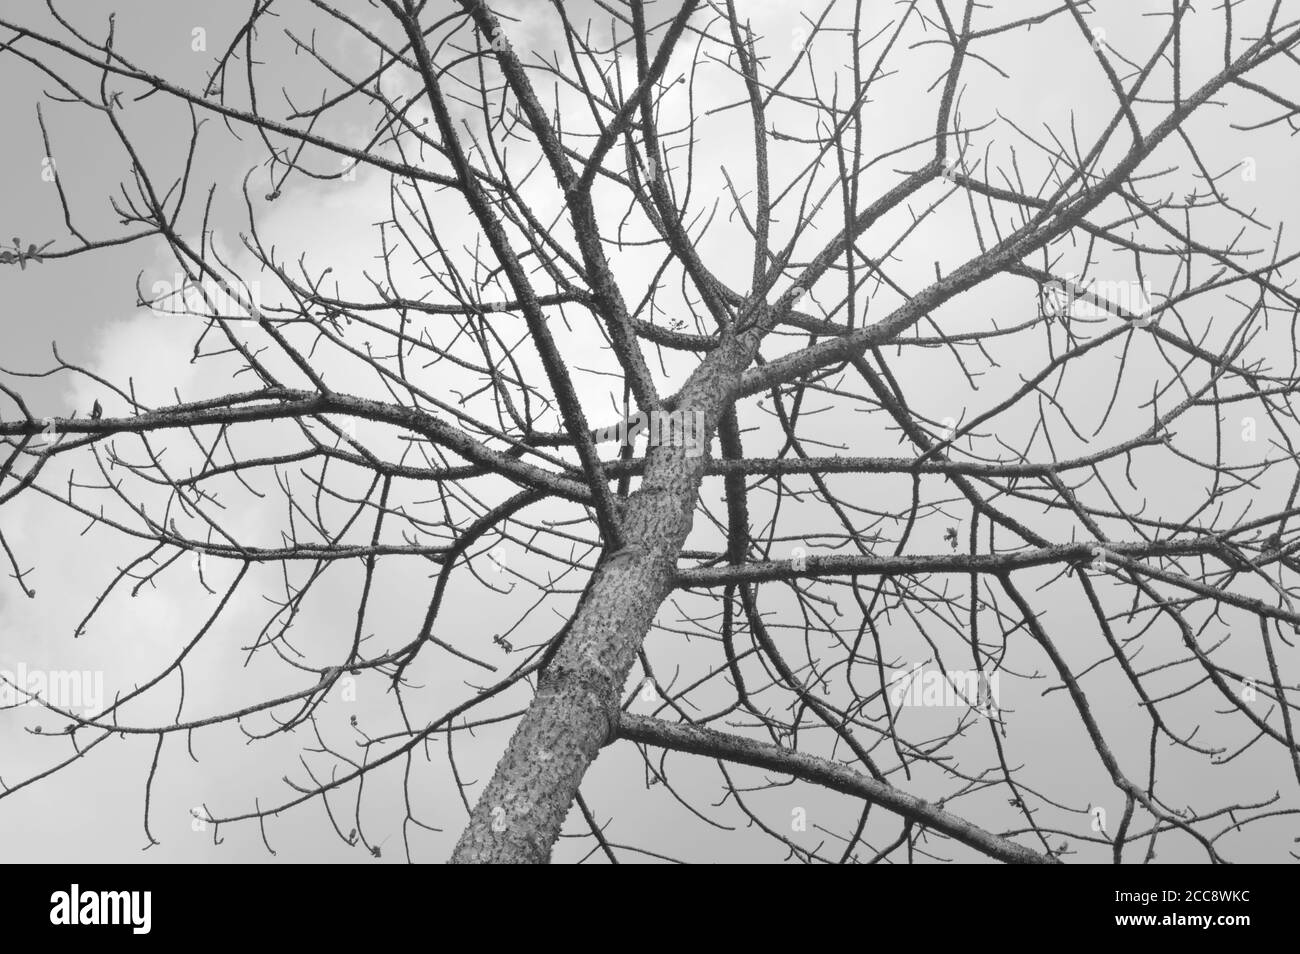 Bild zeigt einen Baum ohne Blätter mit throniger Rinde gegen einen bewölkten Himmel. Das Bild ist symbolisch für Depression und hat einen deprimierenden Blick darauf. Stockfoto